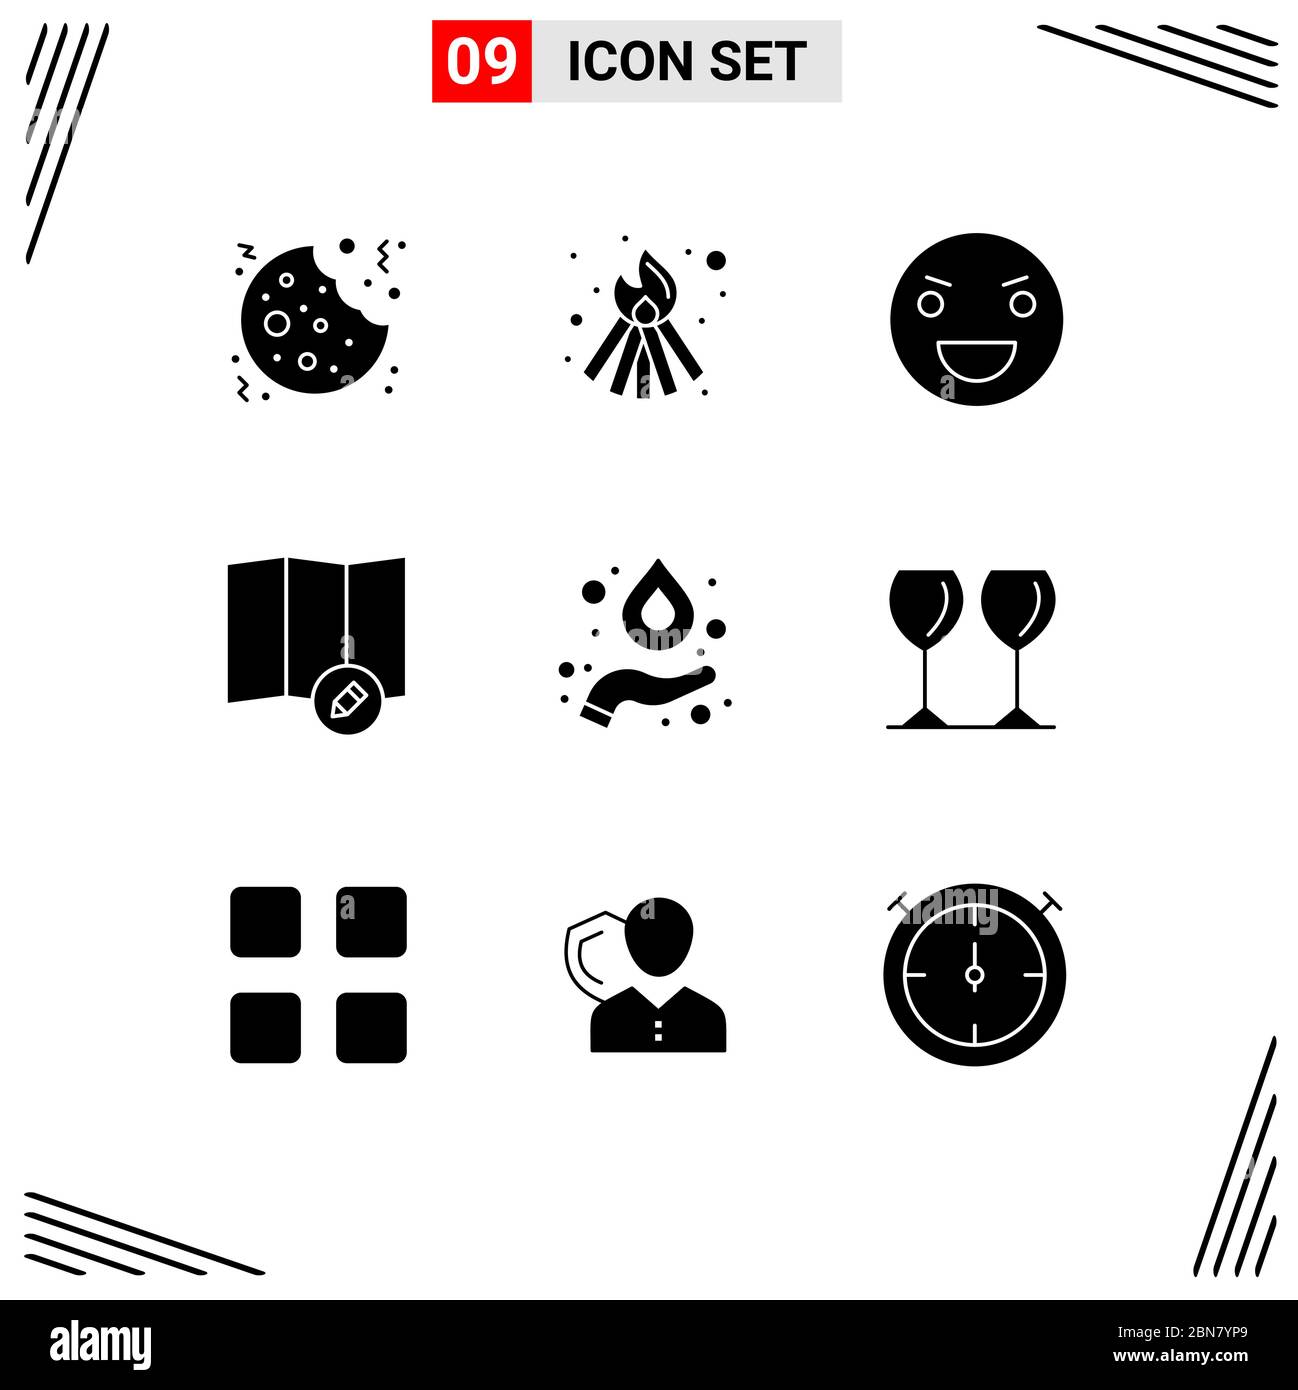 9 interfaccia utente Solid Glyph Pack di segni moderni e simboli di vetro, idrogeno, Halloween, formula, modifica elementi di disegno vettoriale modificabili Illustrazione Vettoriale